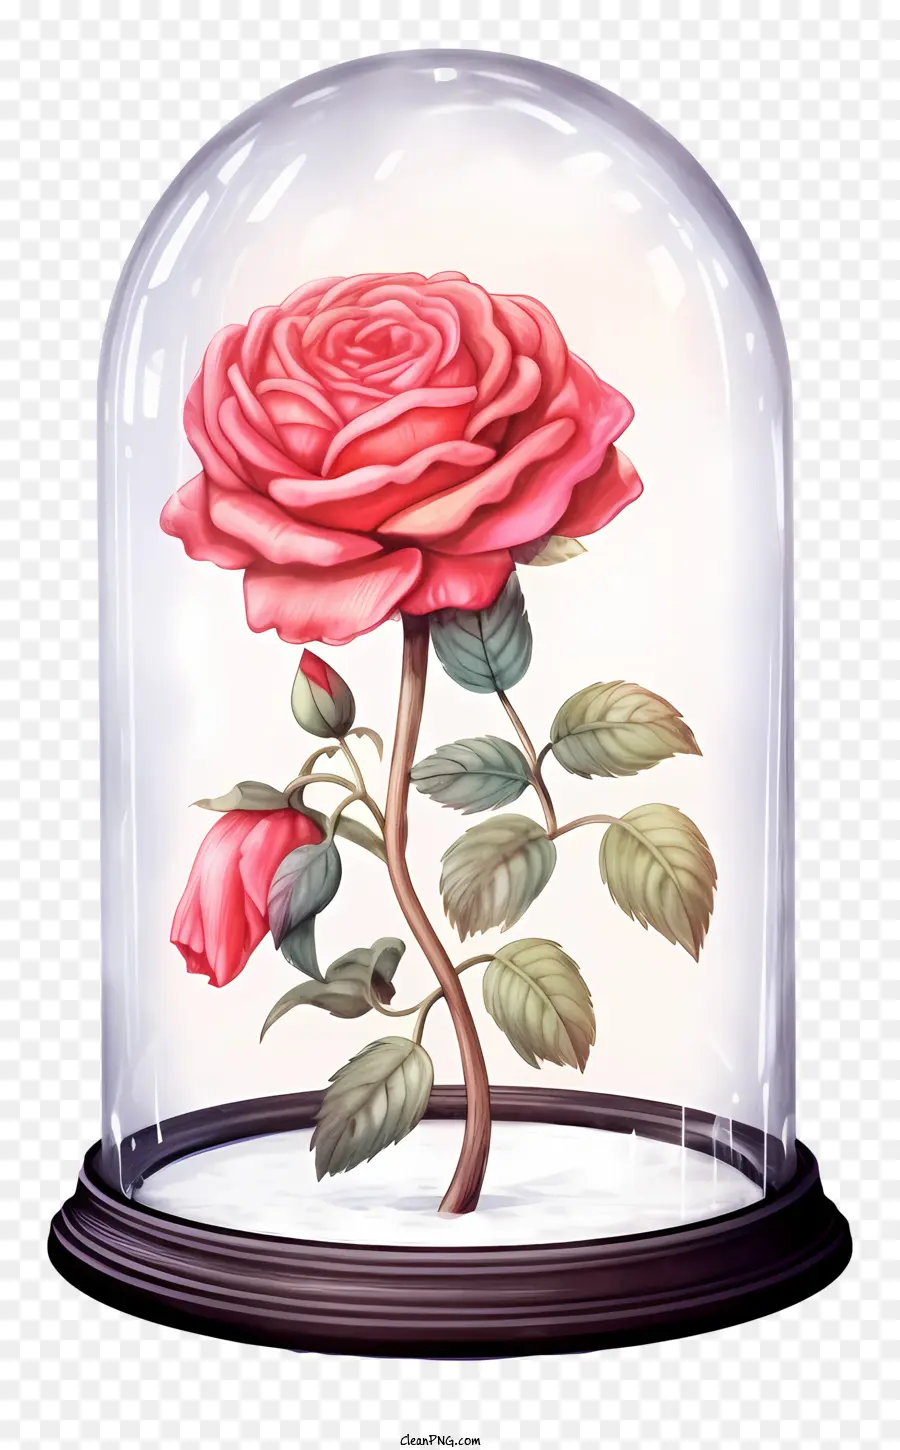 rosa - Ravvicinata rosa rosa in vaso di campana di vetro